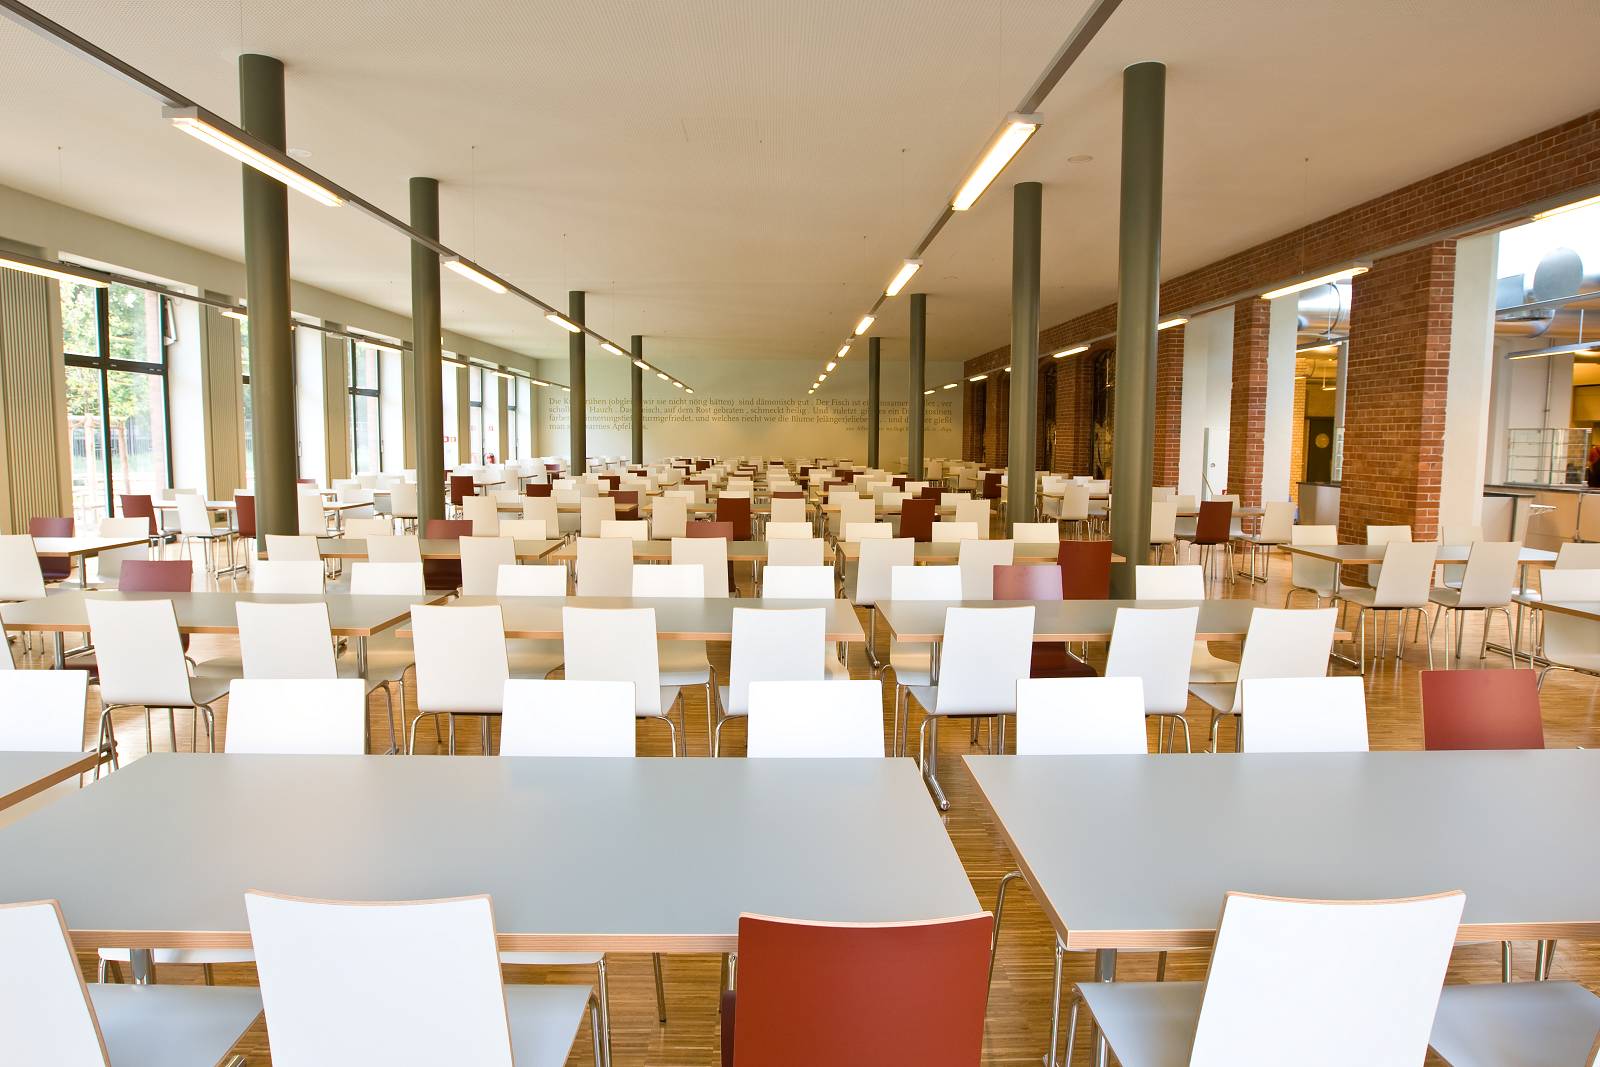 Der leere Essenssaal einer Mensa: Viele Tischreihen stehen in einem langen Saal. Von einer großen Fensterfront fällt viel Licht herein